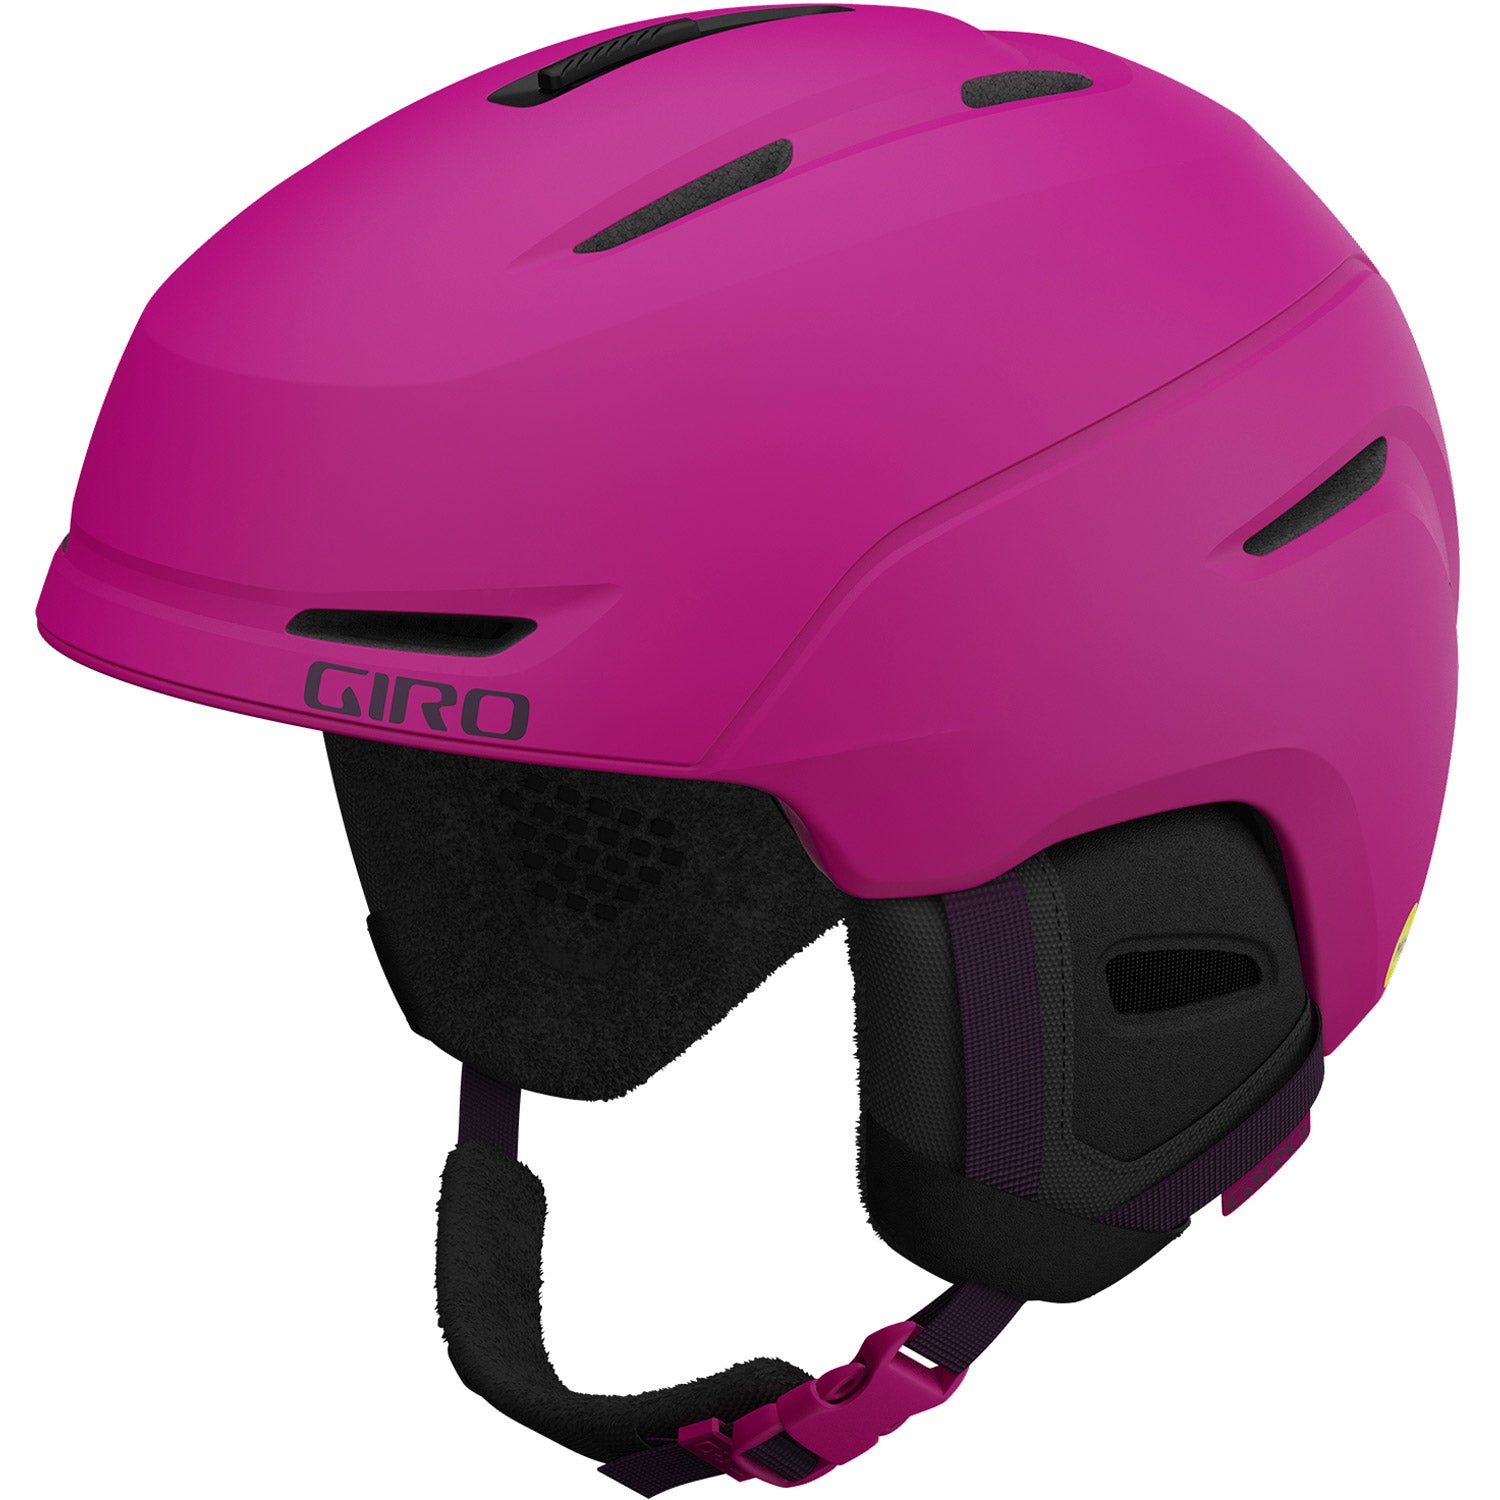 Avera Mips Womens Helmet 2022